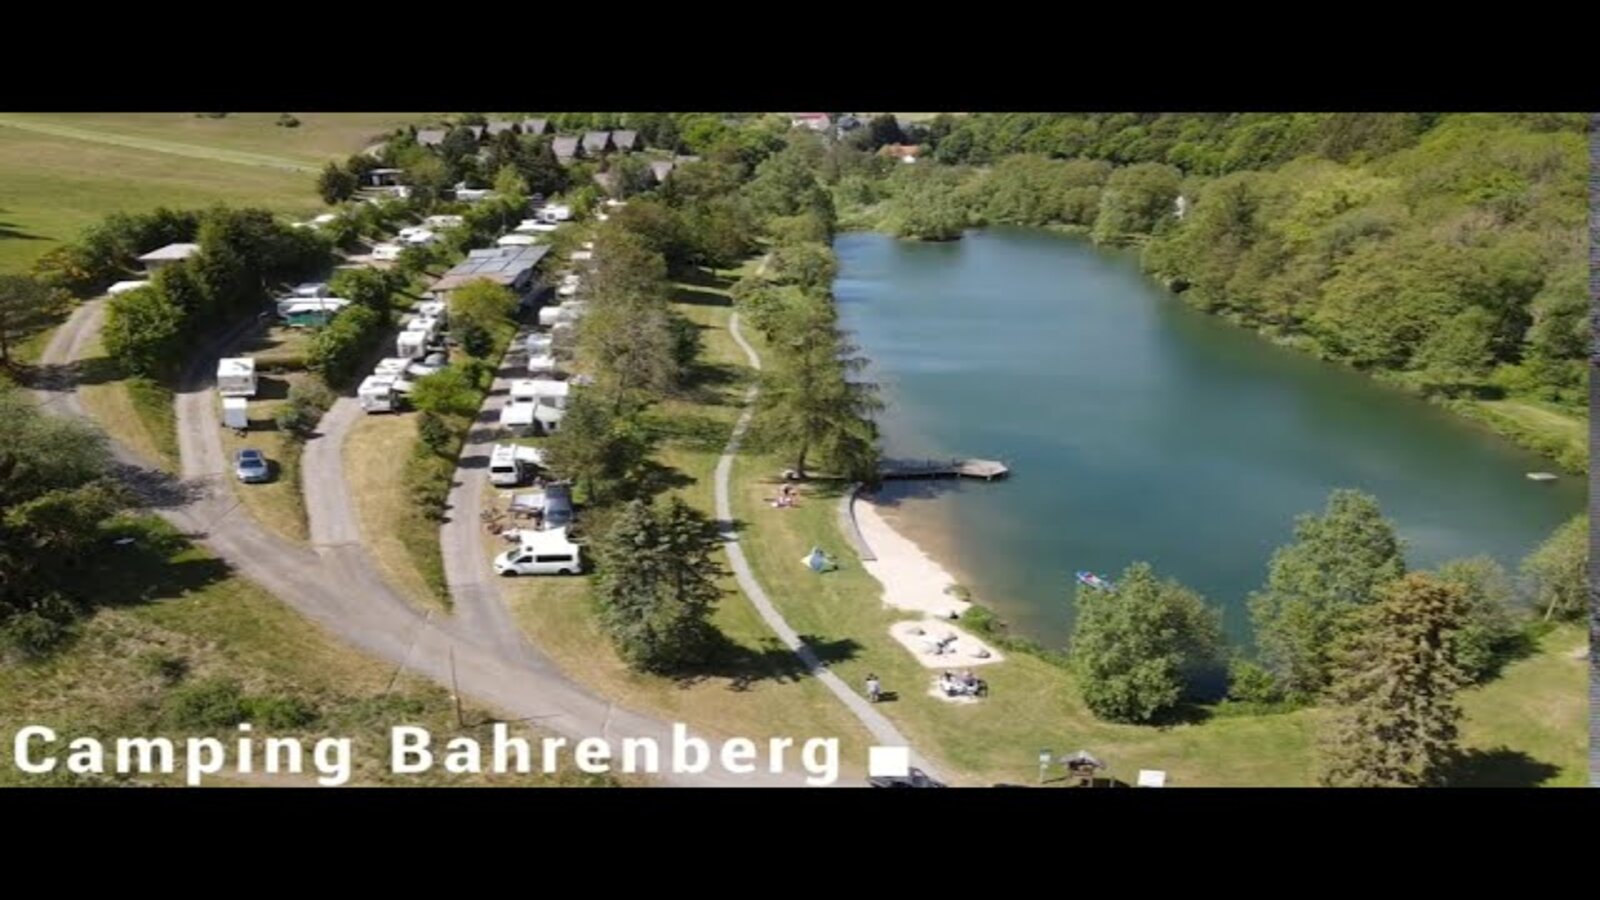 Campingplatz Bahrenberg in Willingen Bömighausen